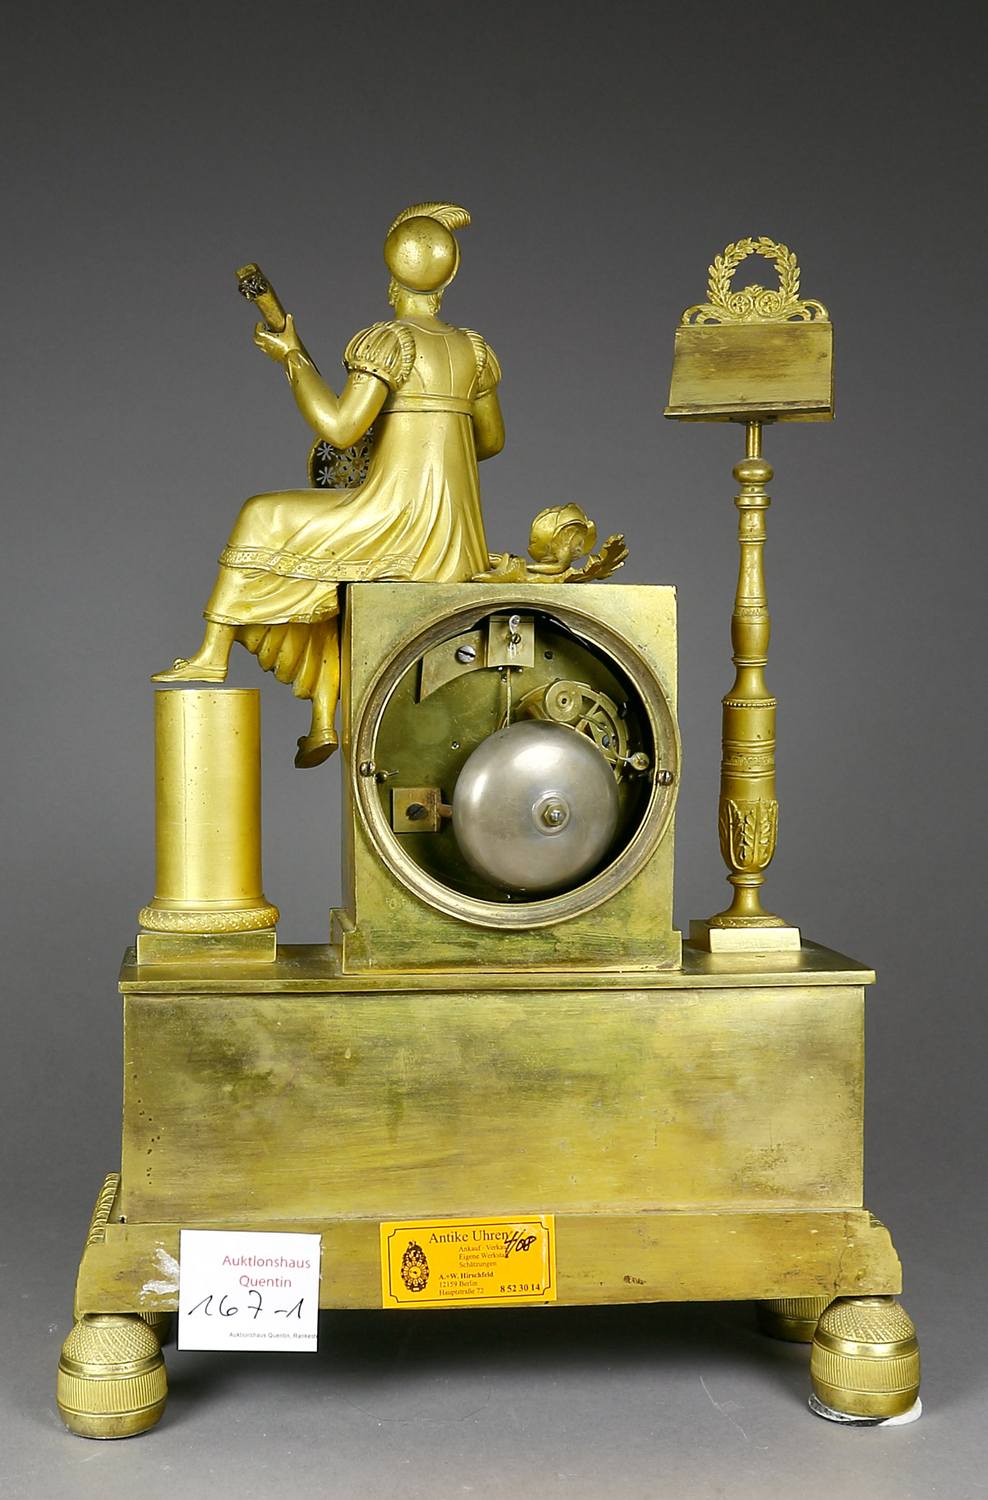 Auktionshaus Quentin Berlin  Glas Uhr  Kaminuhr  Empire  Frankreich  um 1820